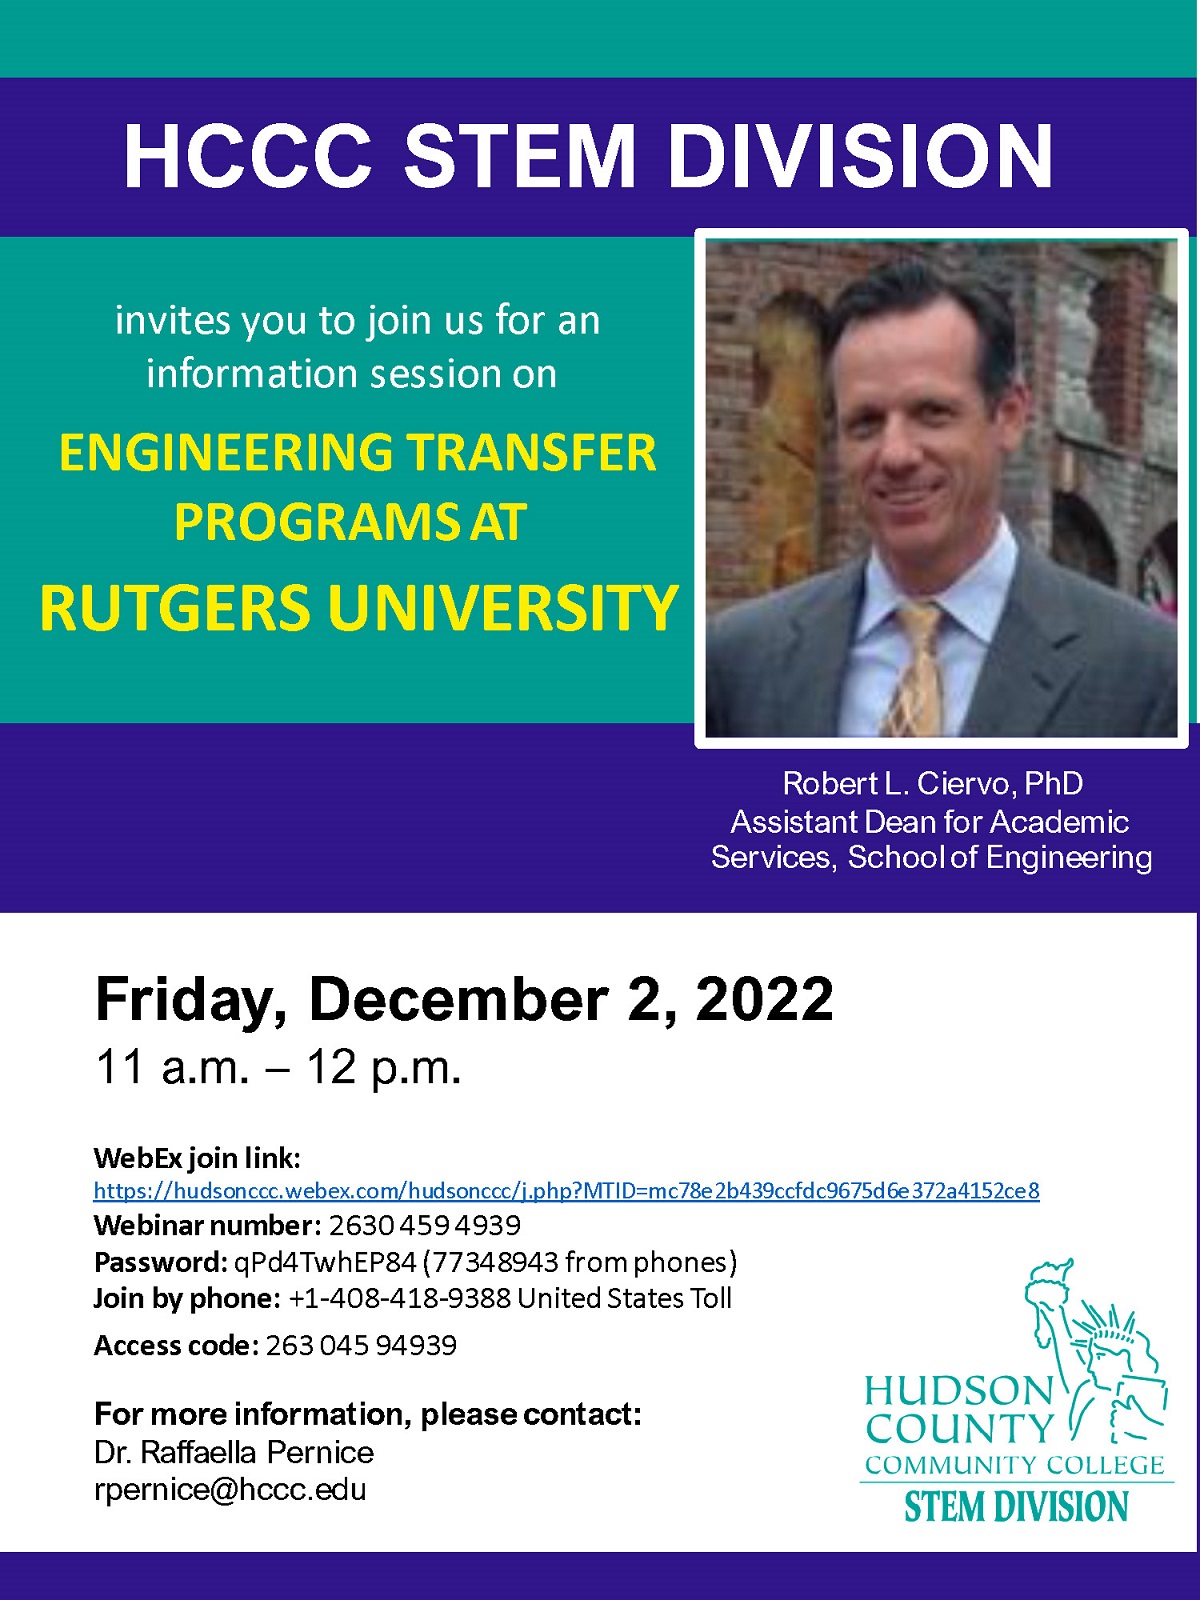 Programas de transferencia de ingeniería en la Universidad de Rutgers